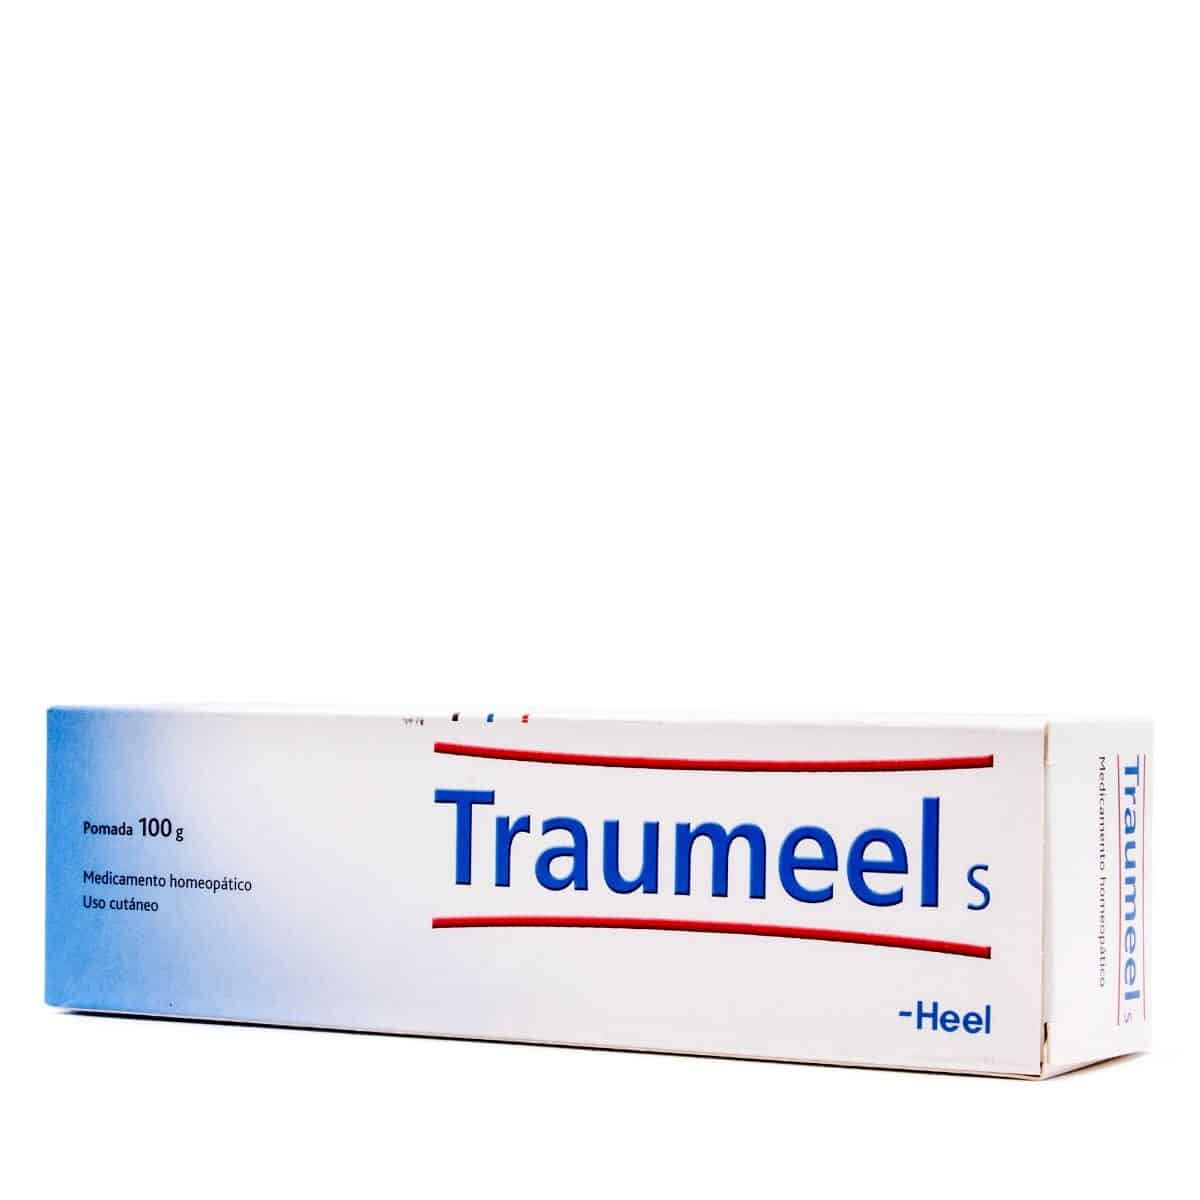 Traumeel S 100 Gramos Crema - Farmacia Online Barata Liceo. Envíos 24/48  Horas.